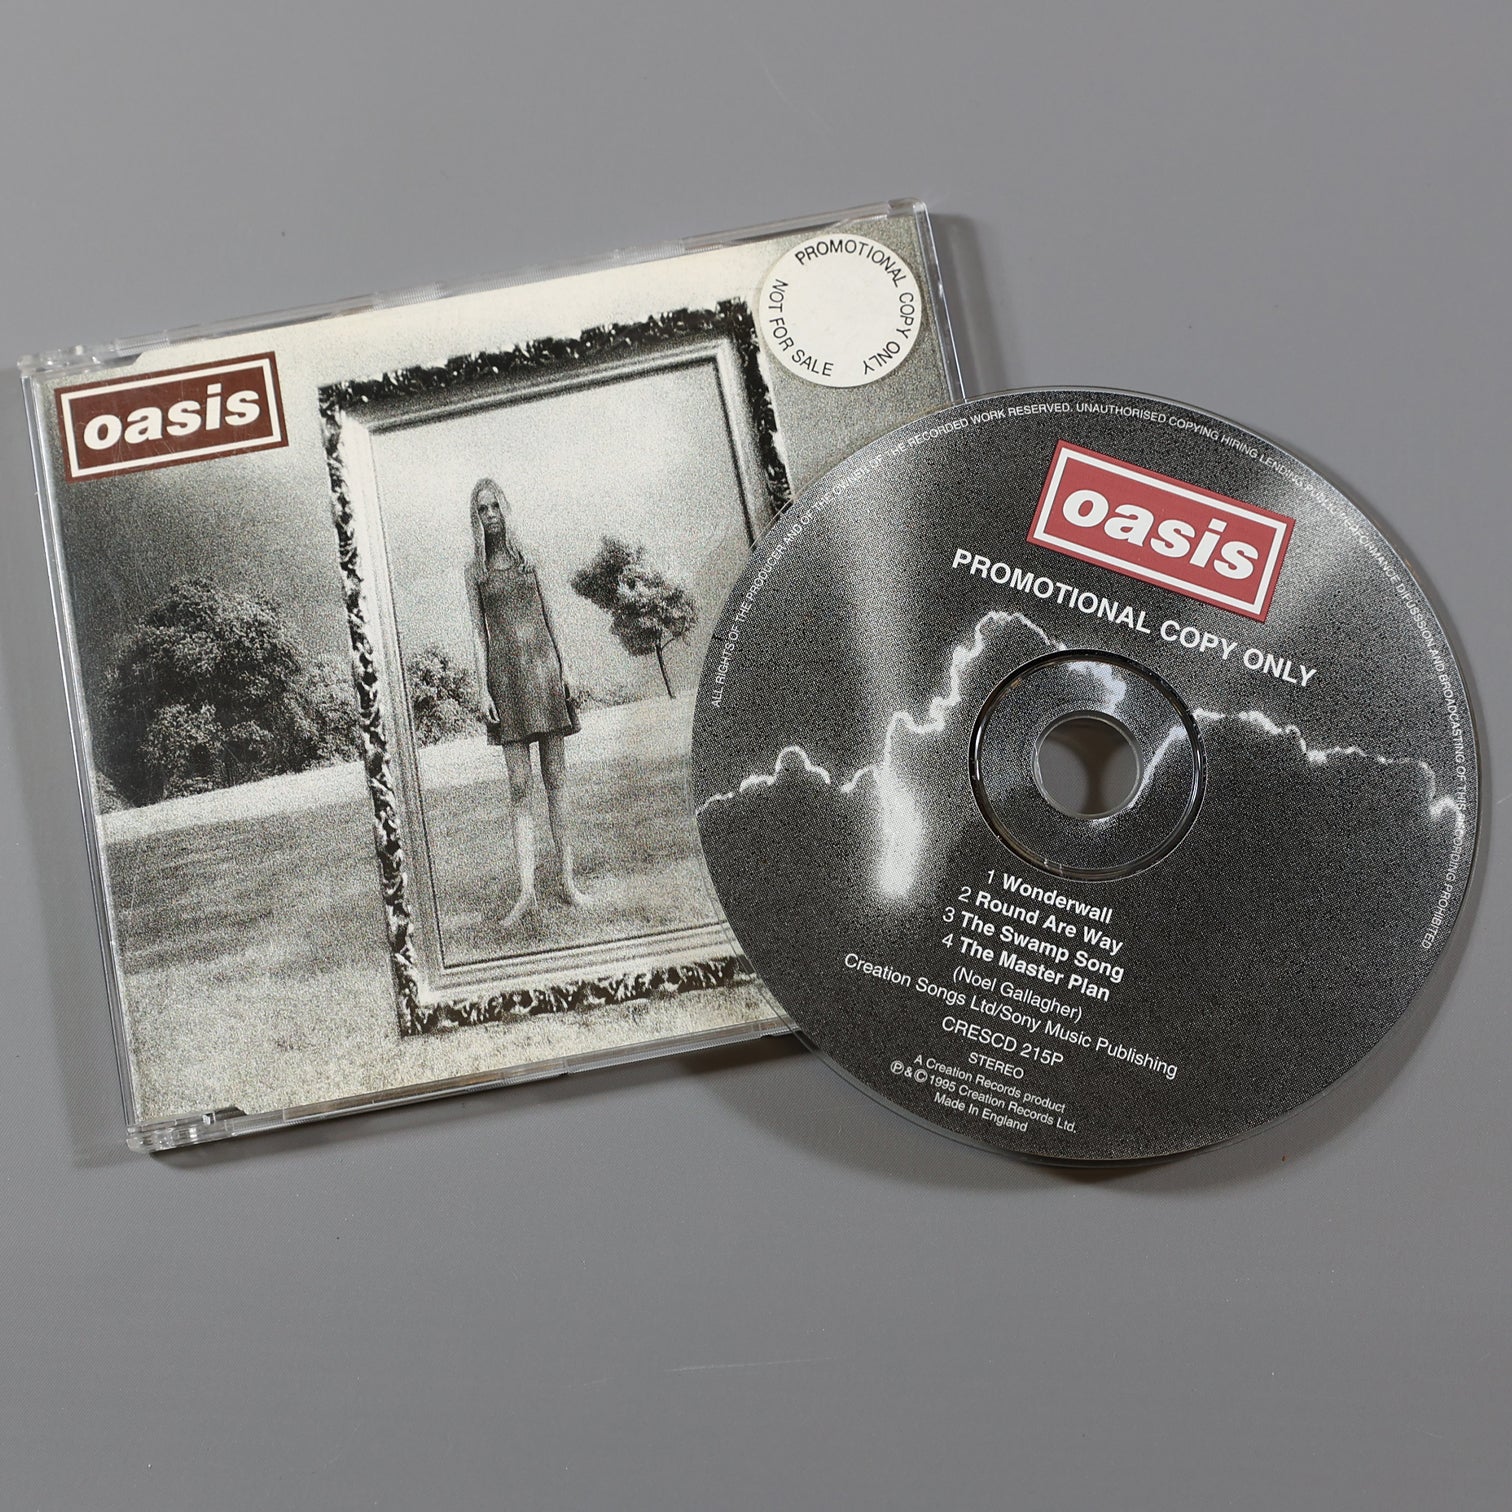 Oasis - Wonderwall Promo CD - New Item